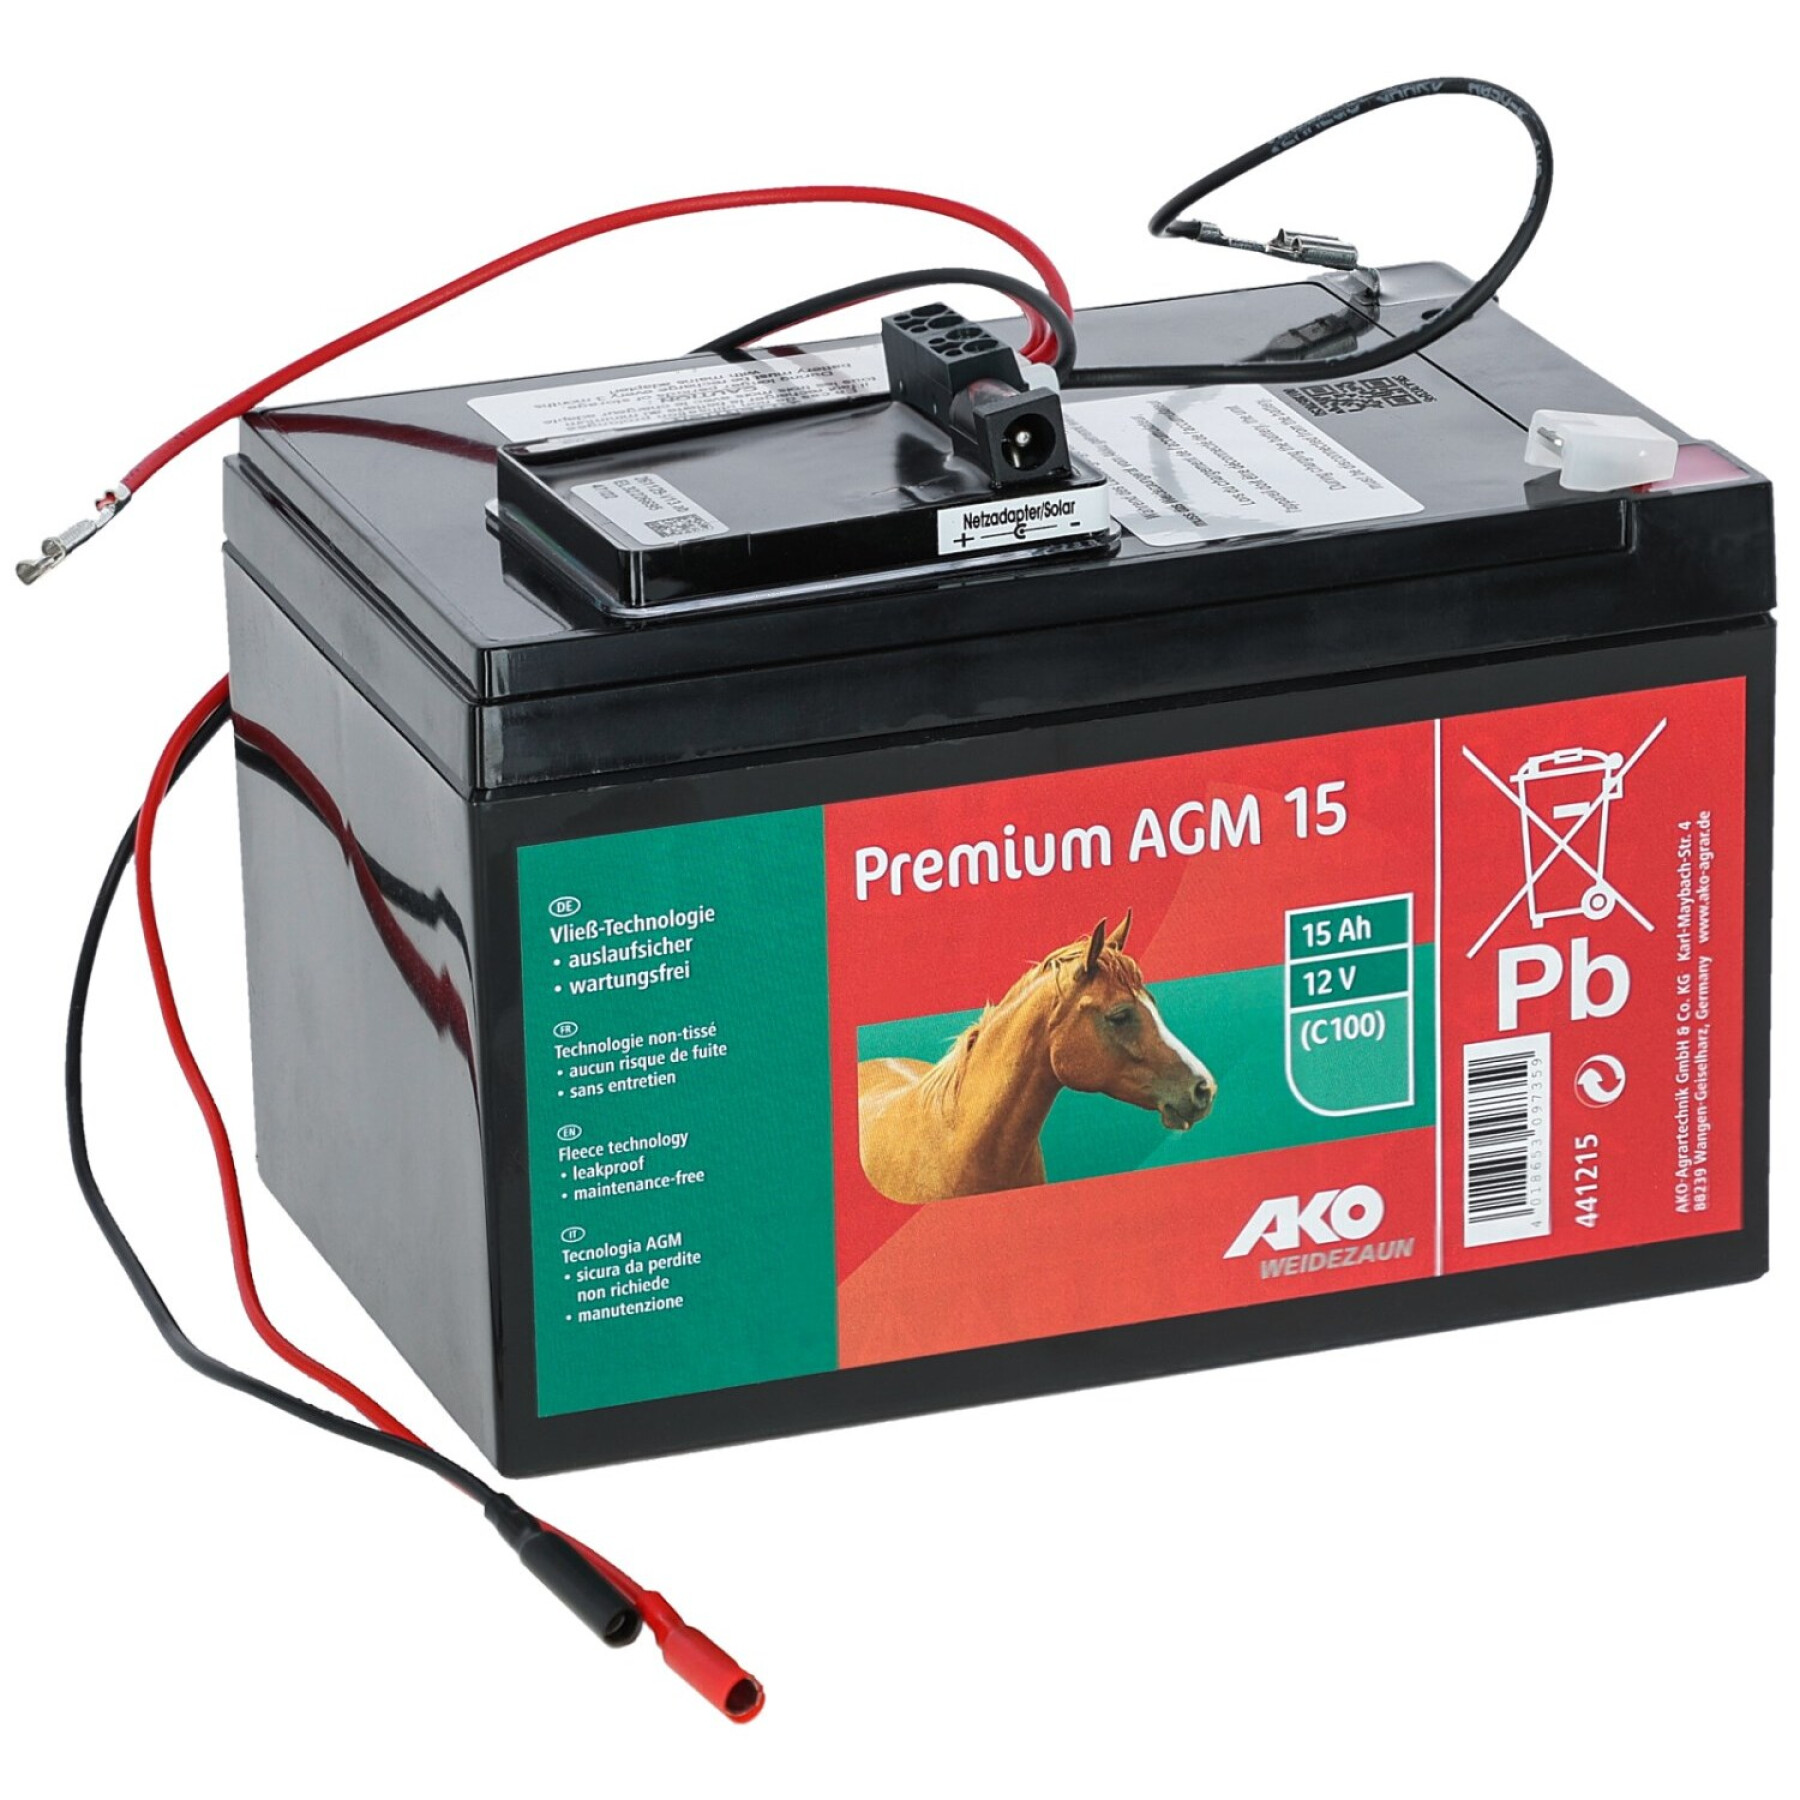 Kit de batterie complet avec adaptateur secteur Ako Premium AGM - Chauffe  dos et massages - Couvertures - Cheval au repos